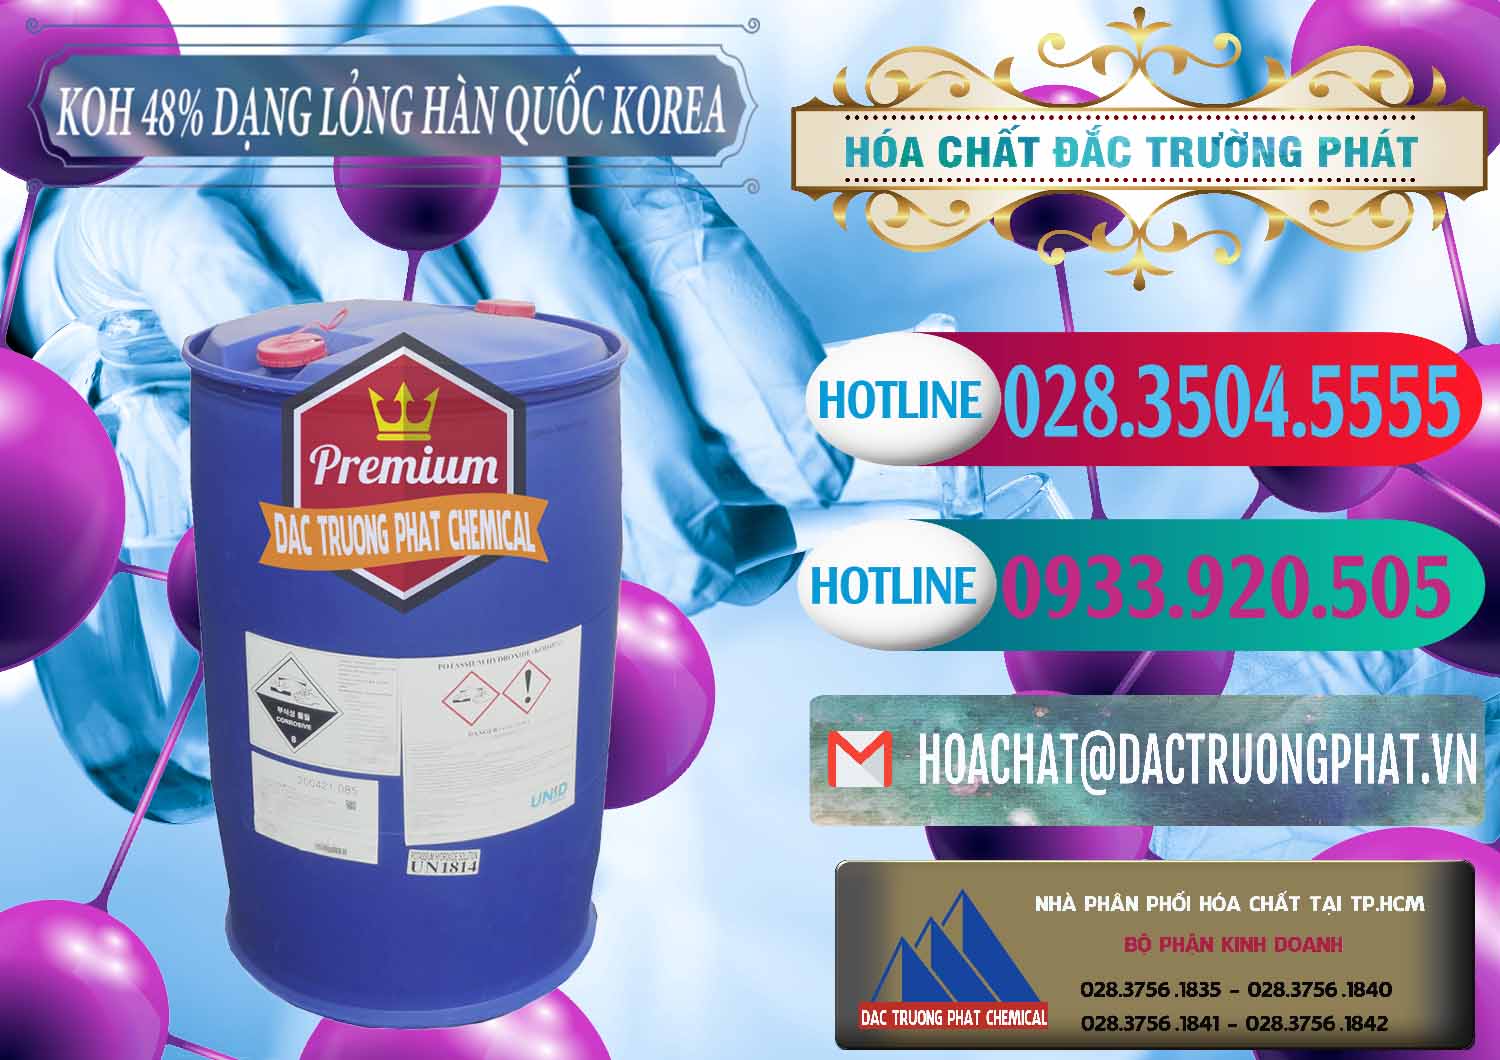 Chuyên bán ( phân phối ) KOH Dạng Nước – Potassium Hydroxide Lỏng 48% Hàn Quốc Korea - 0293 - Đơn vị kinh doanh & cung cấp hóa chất tại TP.HCM - truongphat.vn